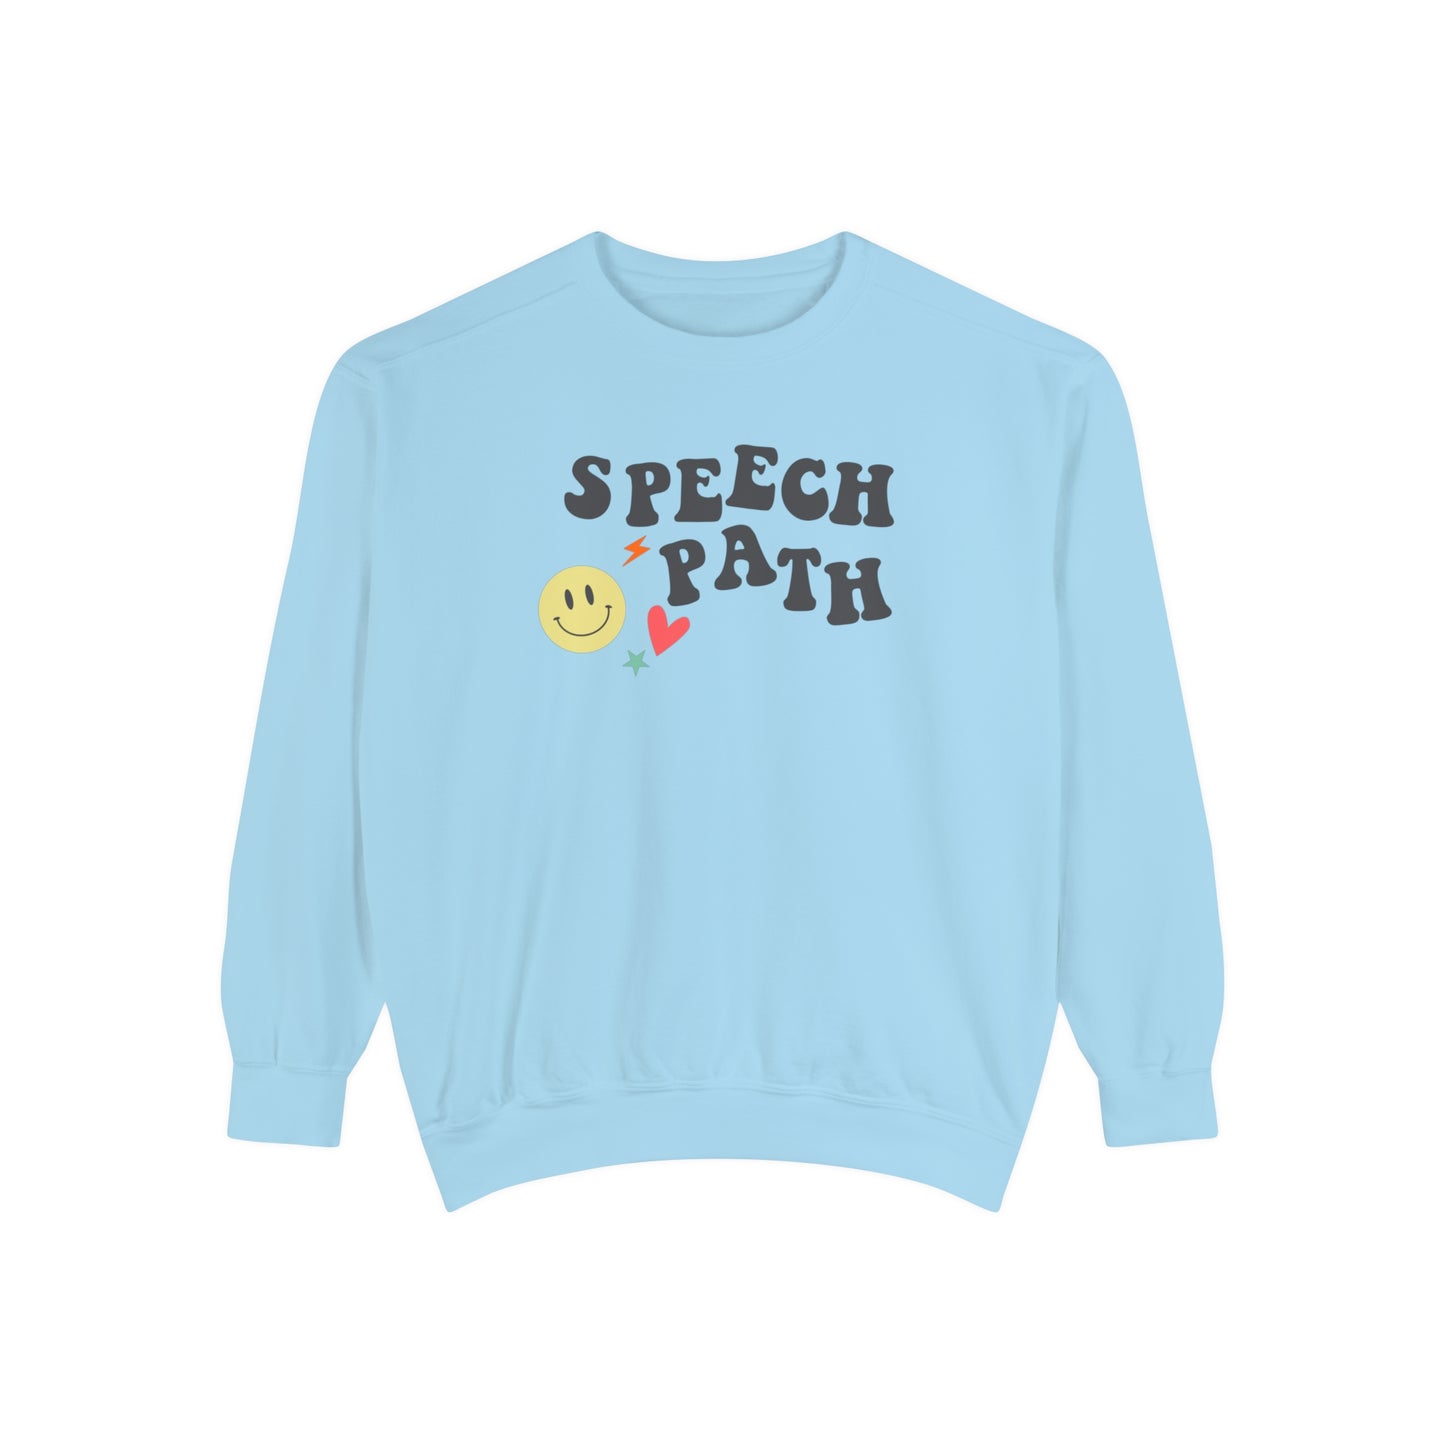 Speech Path Comfort Colors Sweatshirt